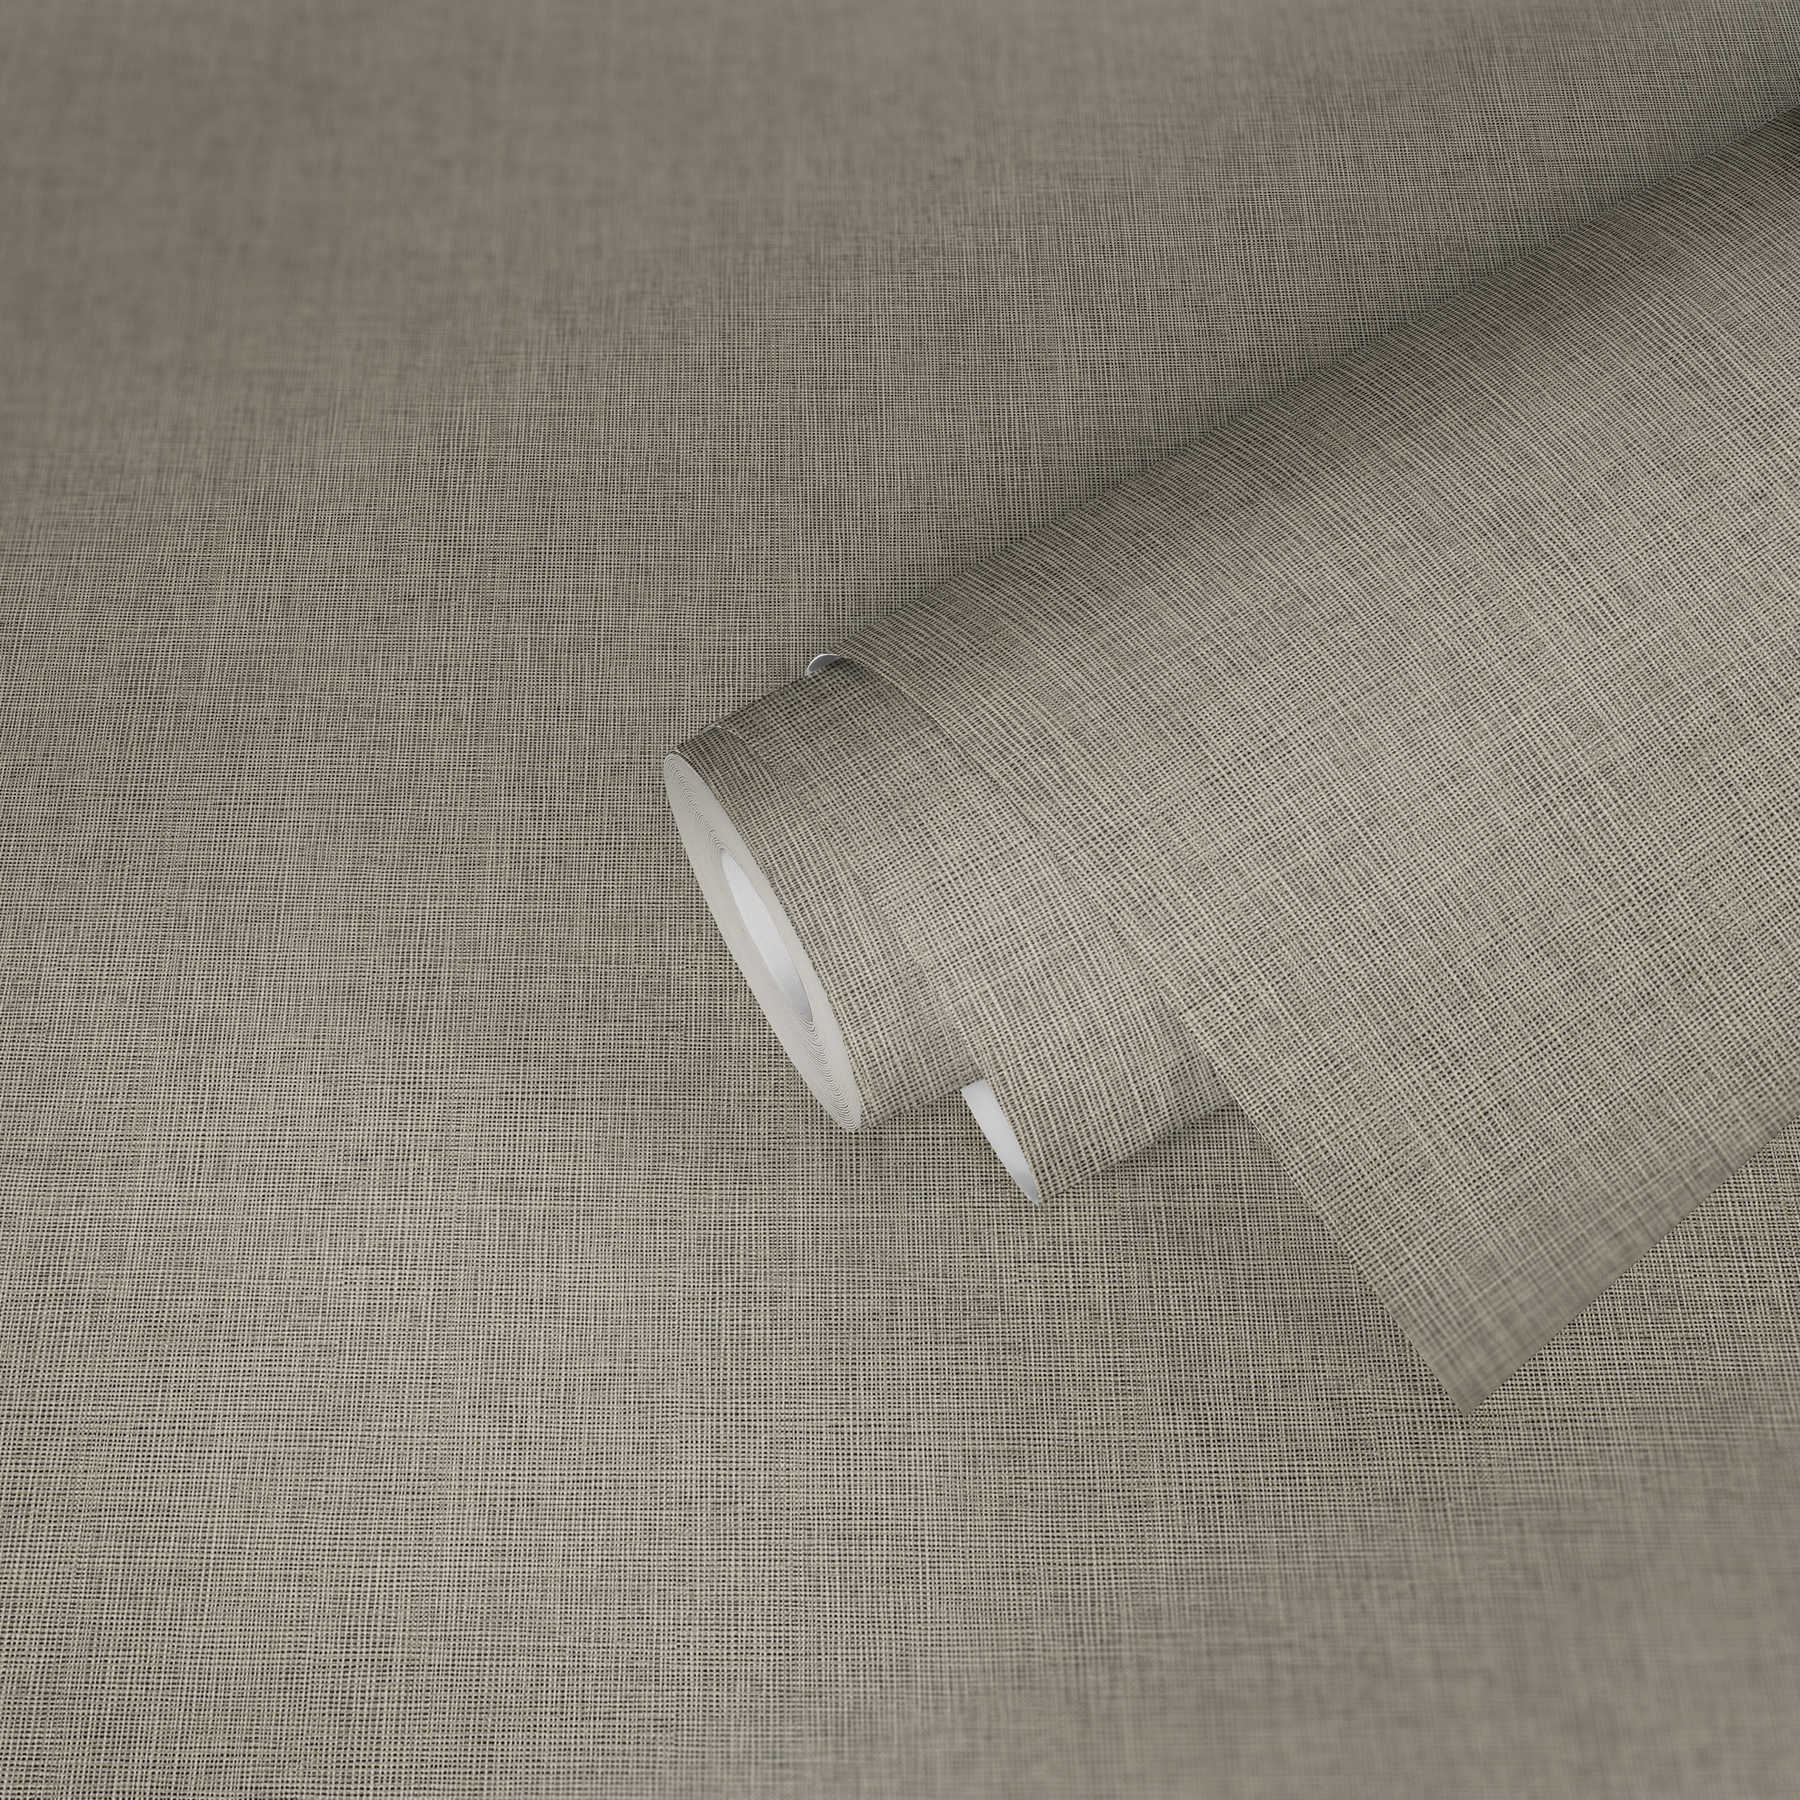             Papier peint uni look textile avec détails métalliques argentés - bleu, gris, argenté
        